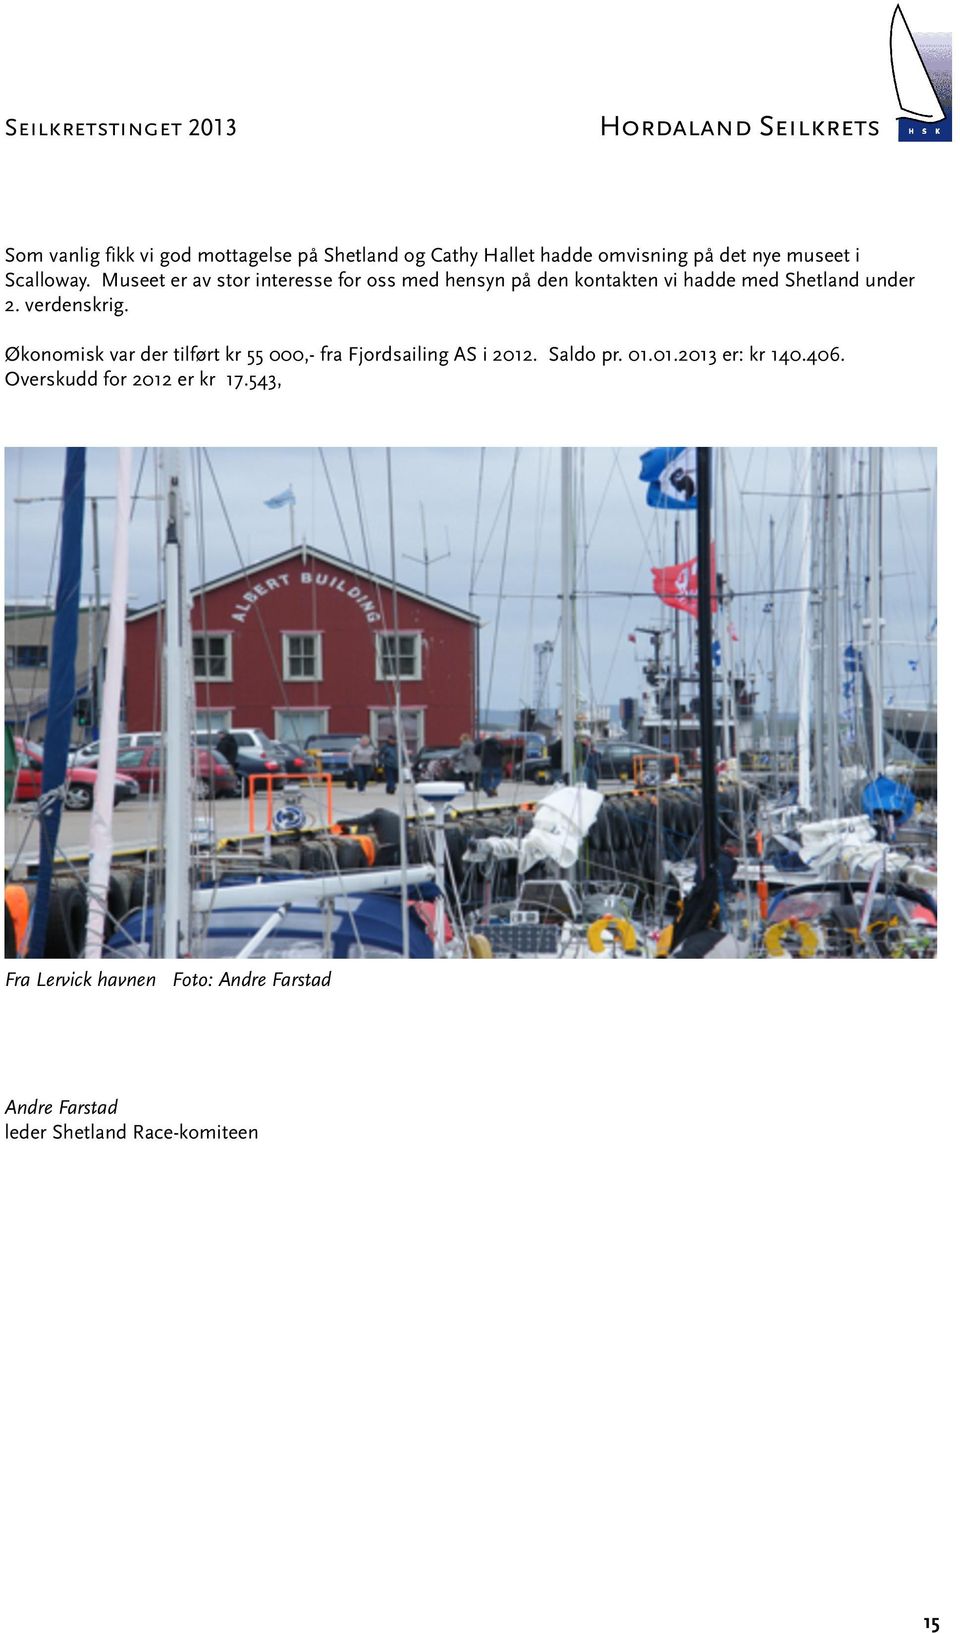 Økonomisk var der tilført kr 55 000,- fra Fjordsailing AS i 2012. Saldo pr. 01.01.2013 er: kr 140.406.